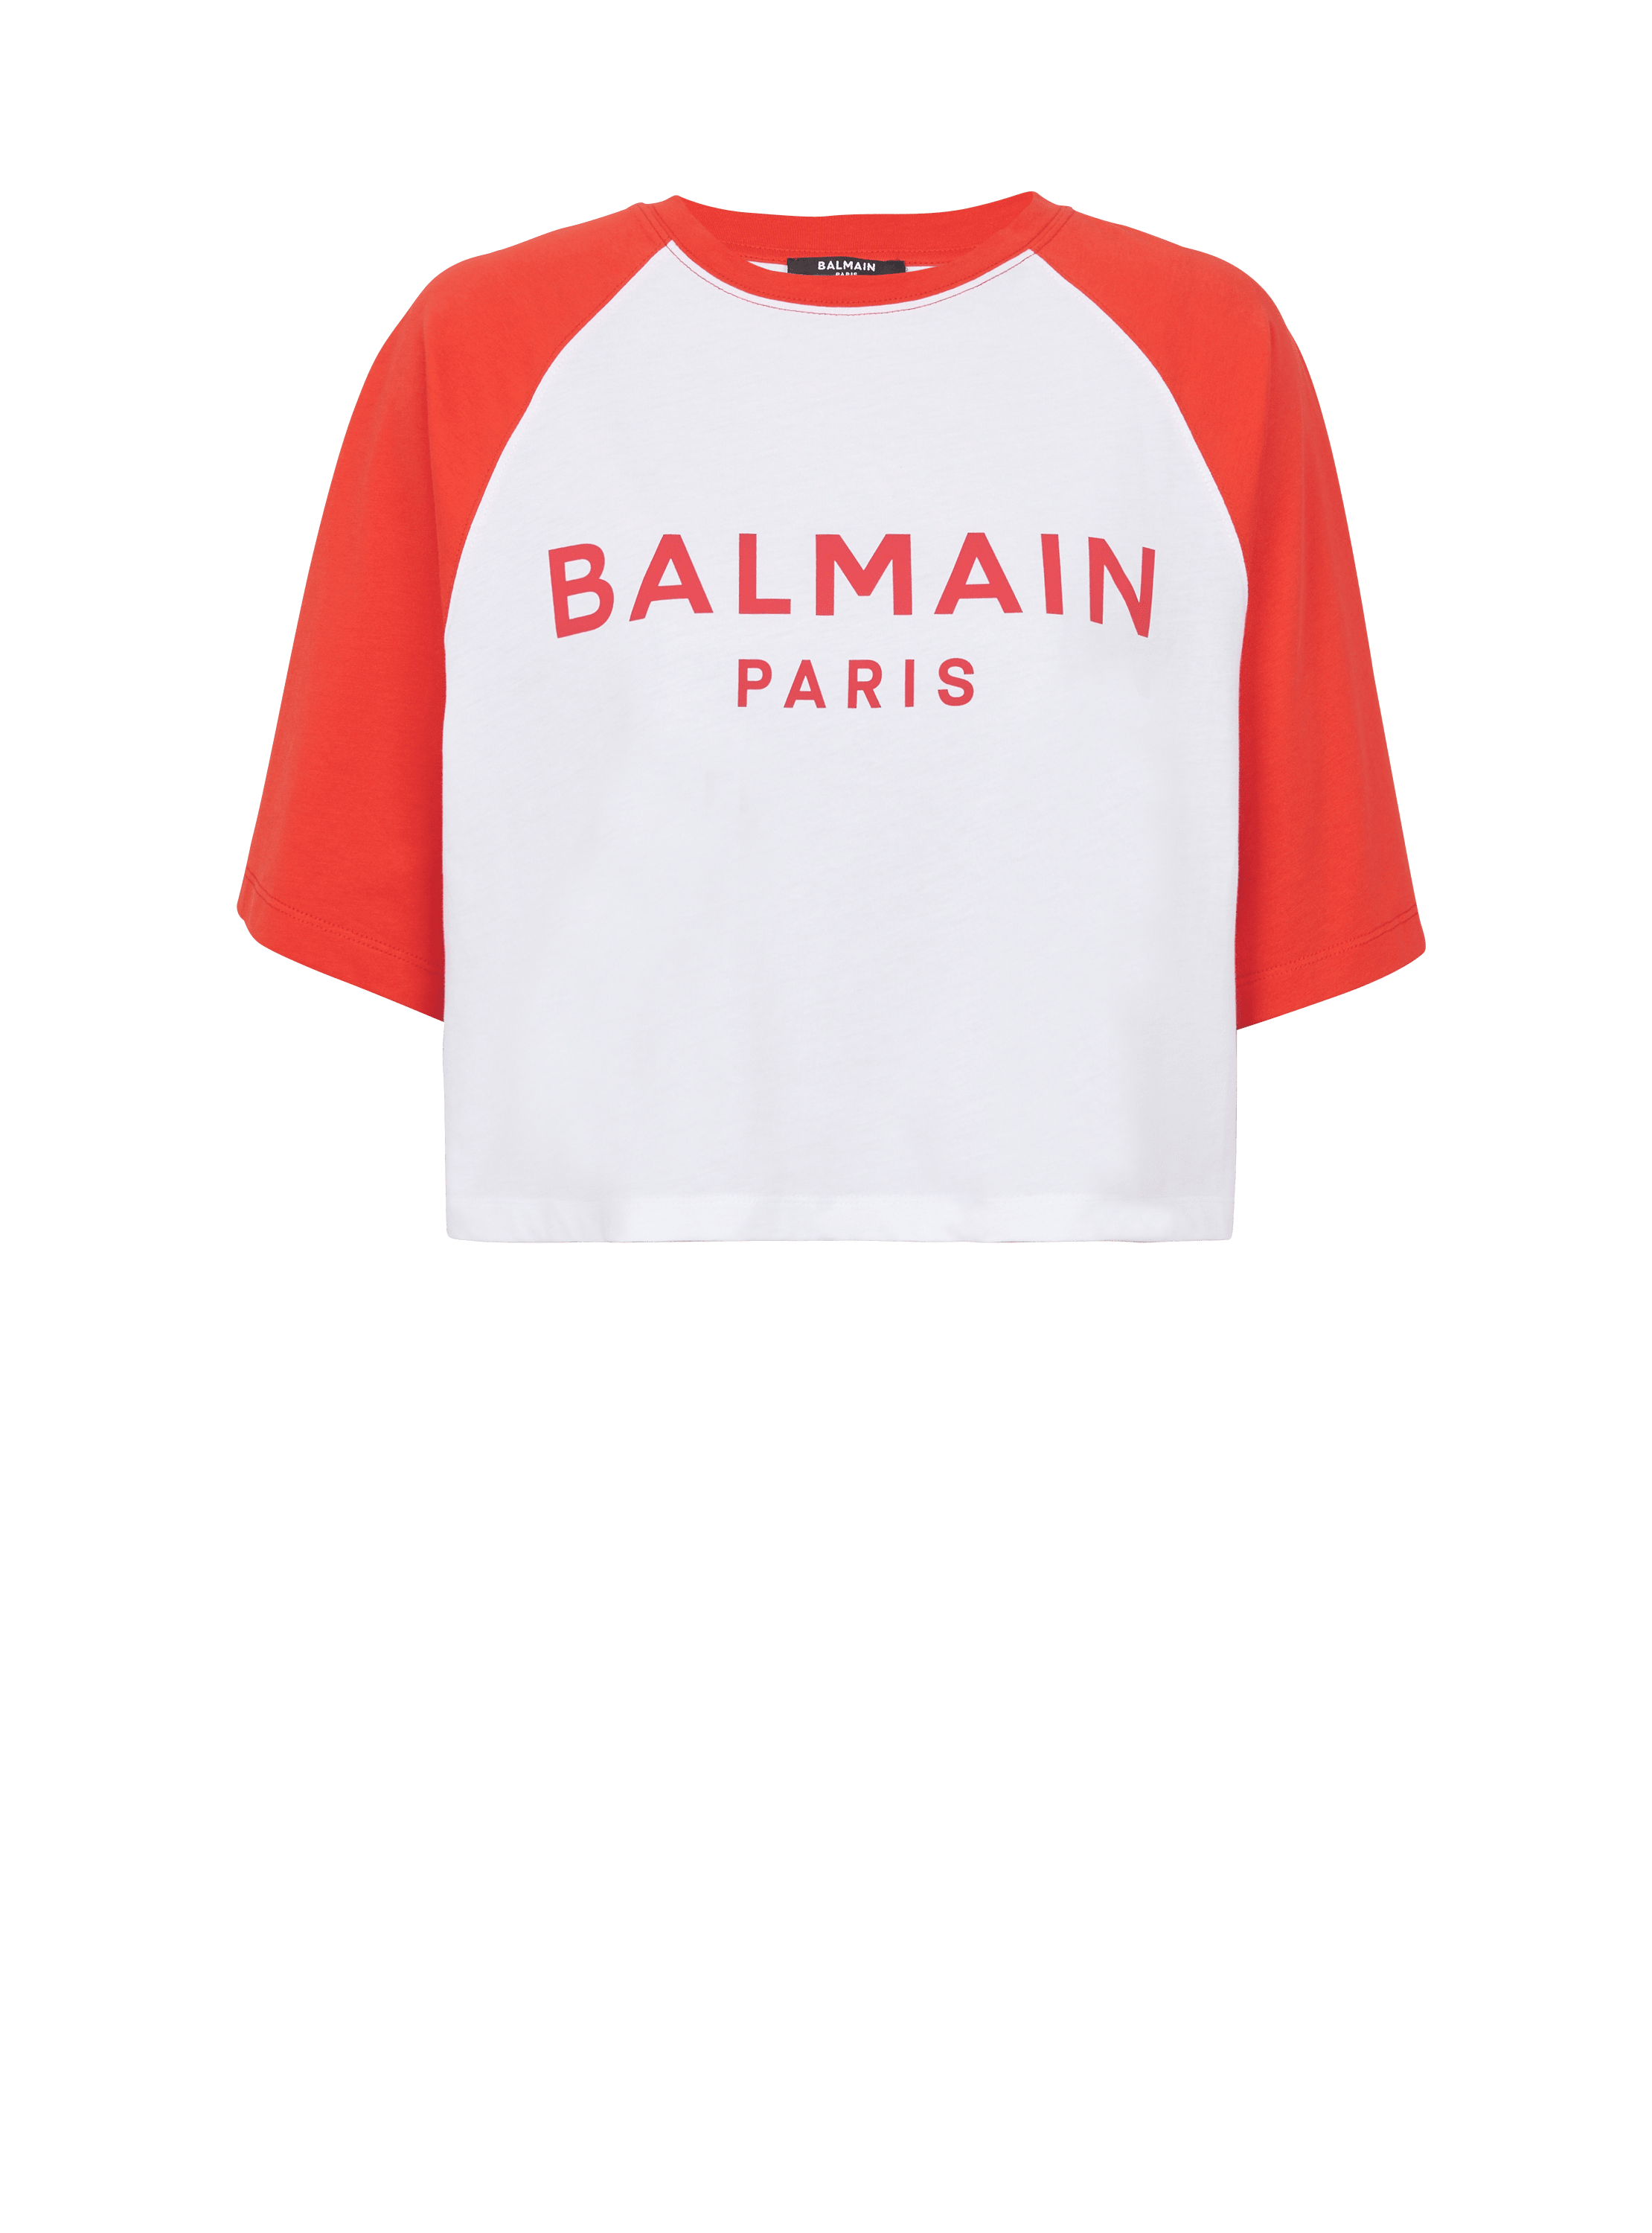 Camiseta Balmain Paris, rojo, hi-res